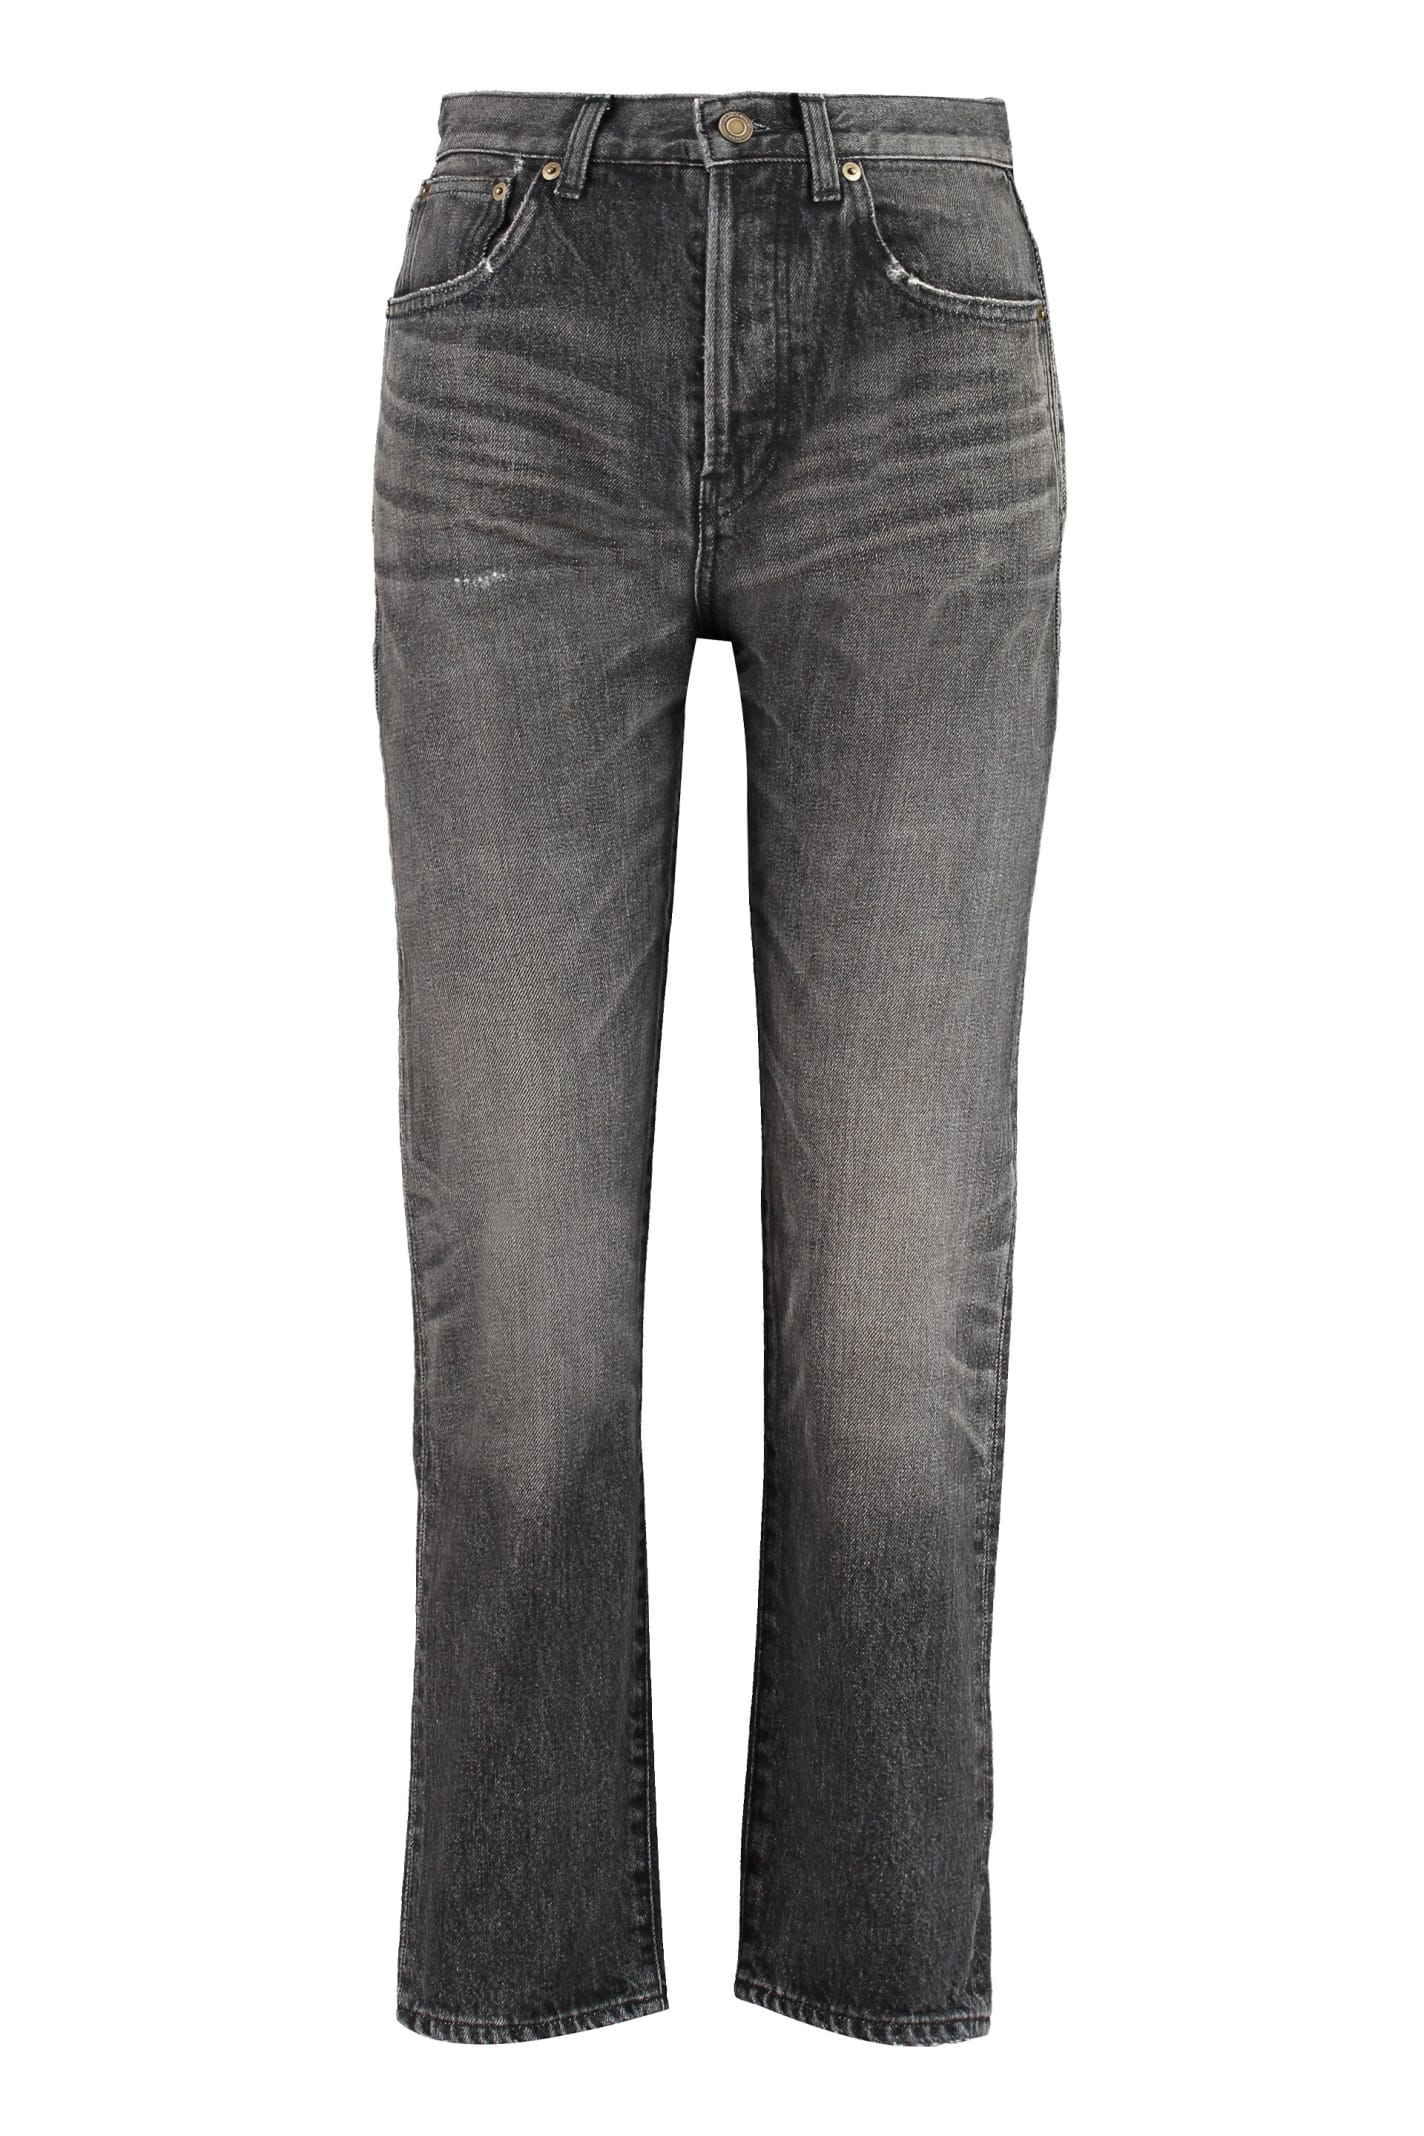 Saint Laurent 5-pocket Slim Fit Jeans